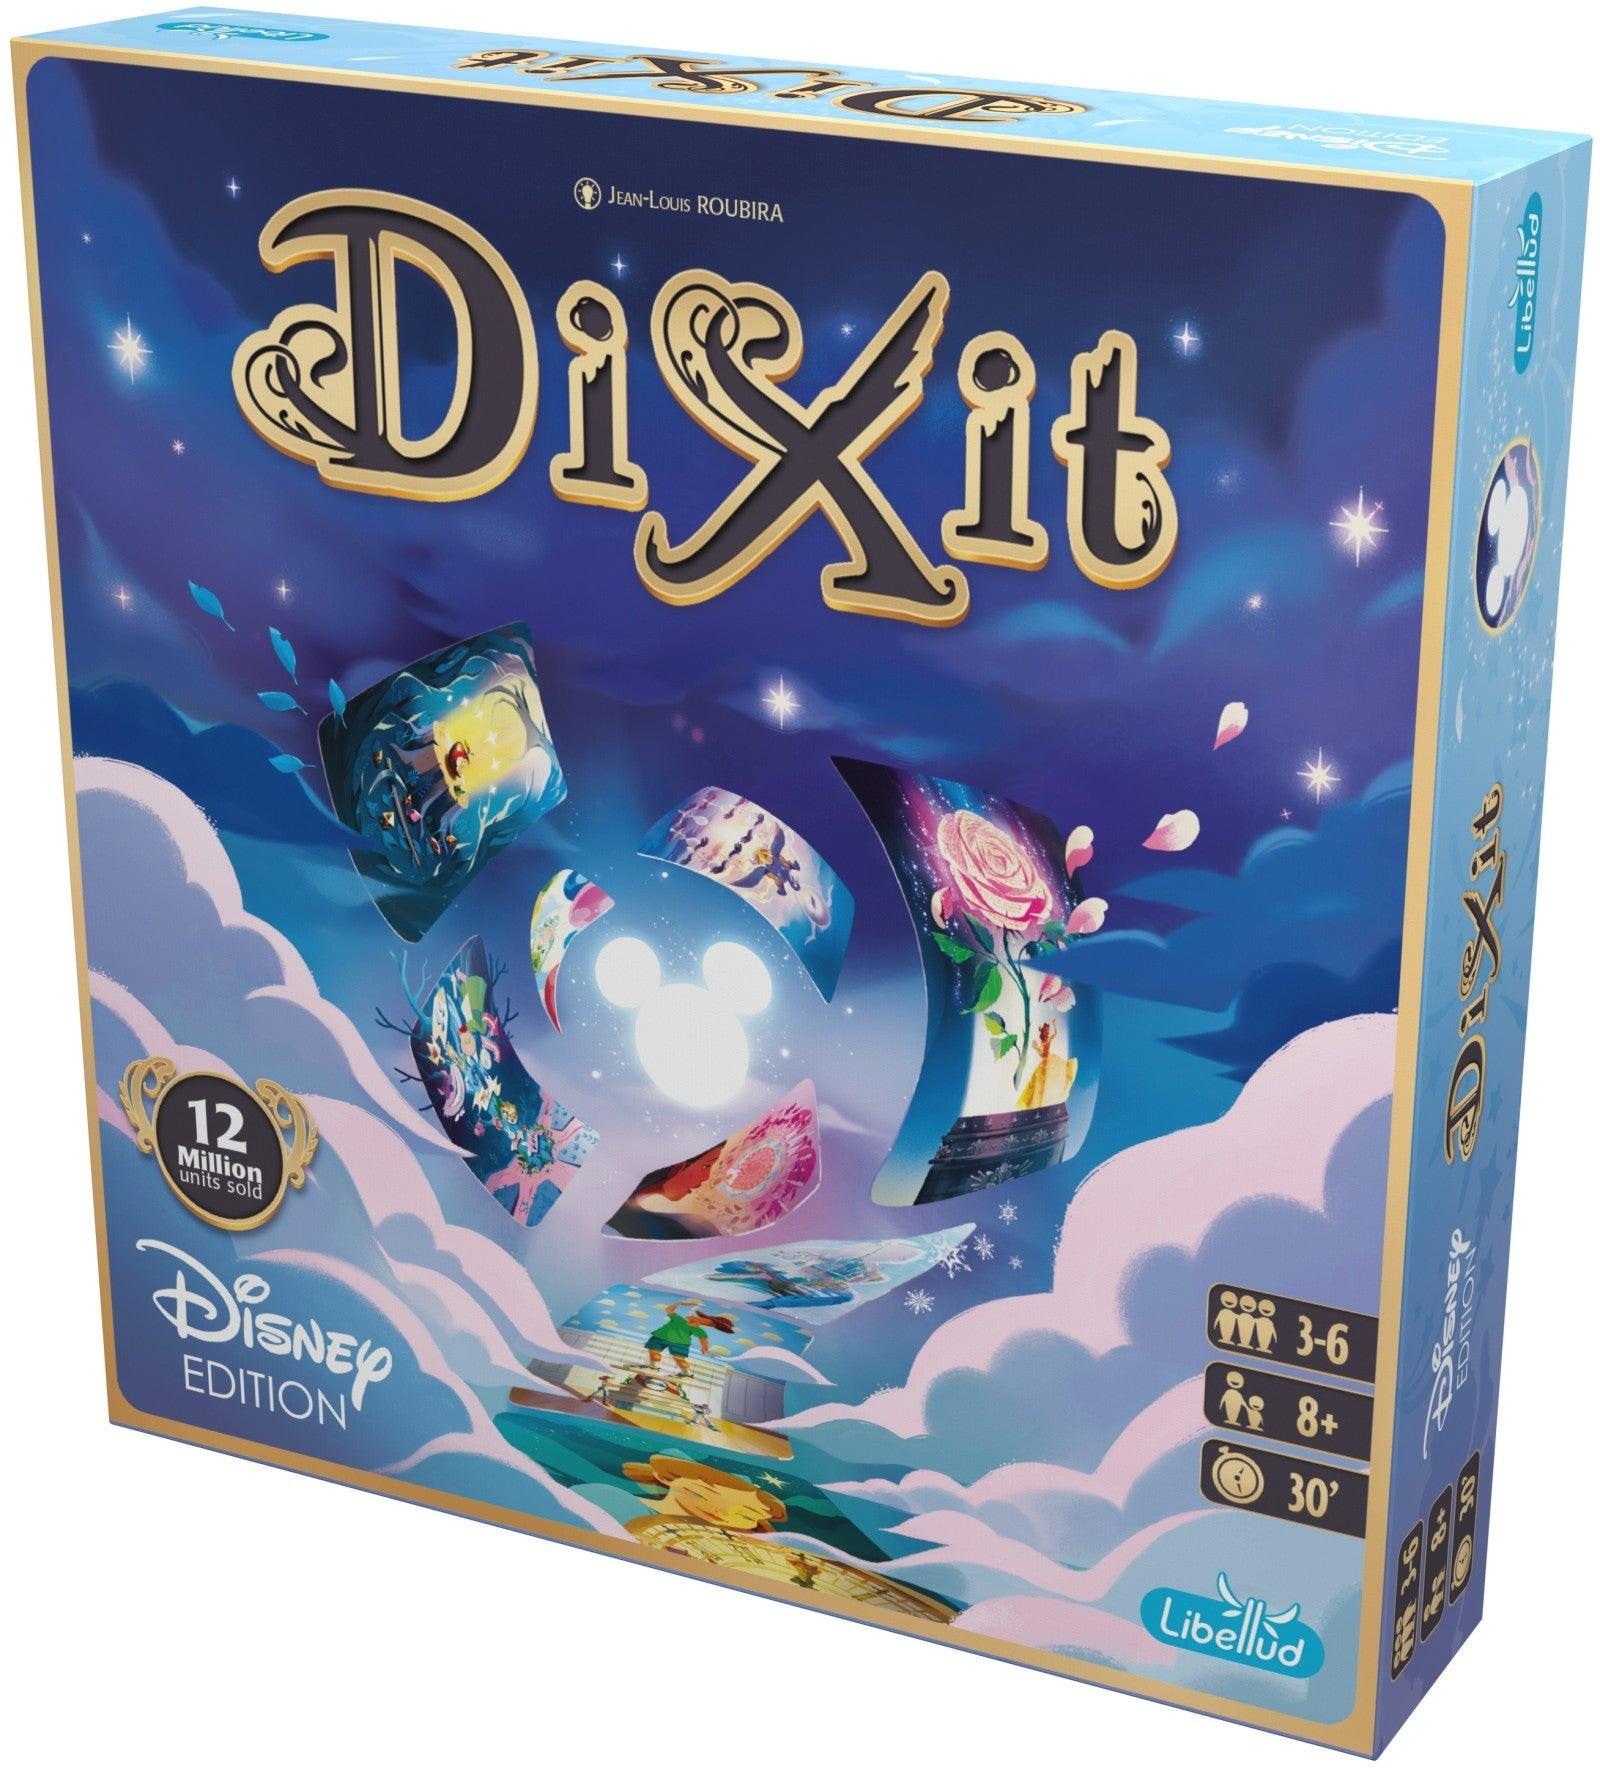 VR-102926 Disney Edition of Dixit - Libellud - Titan Pop Culture